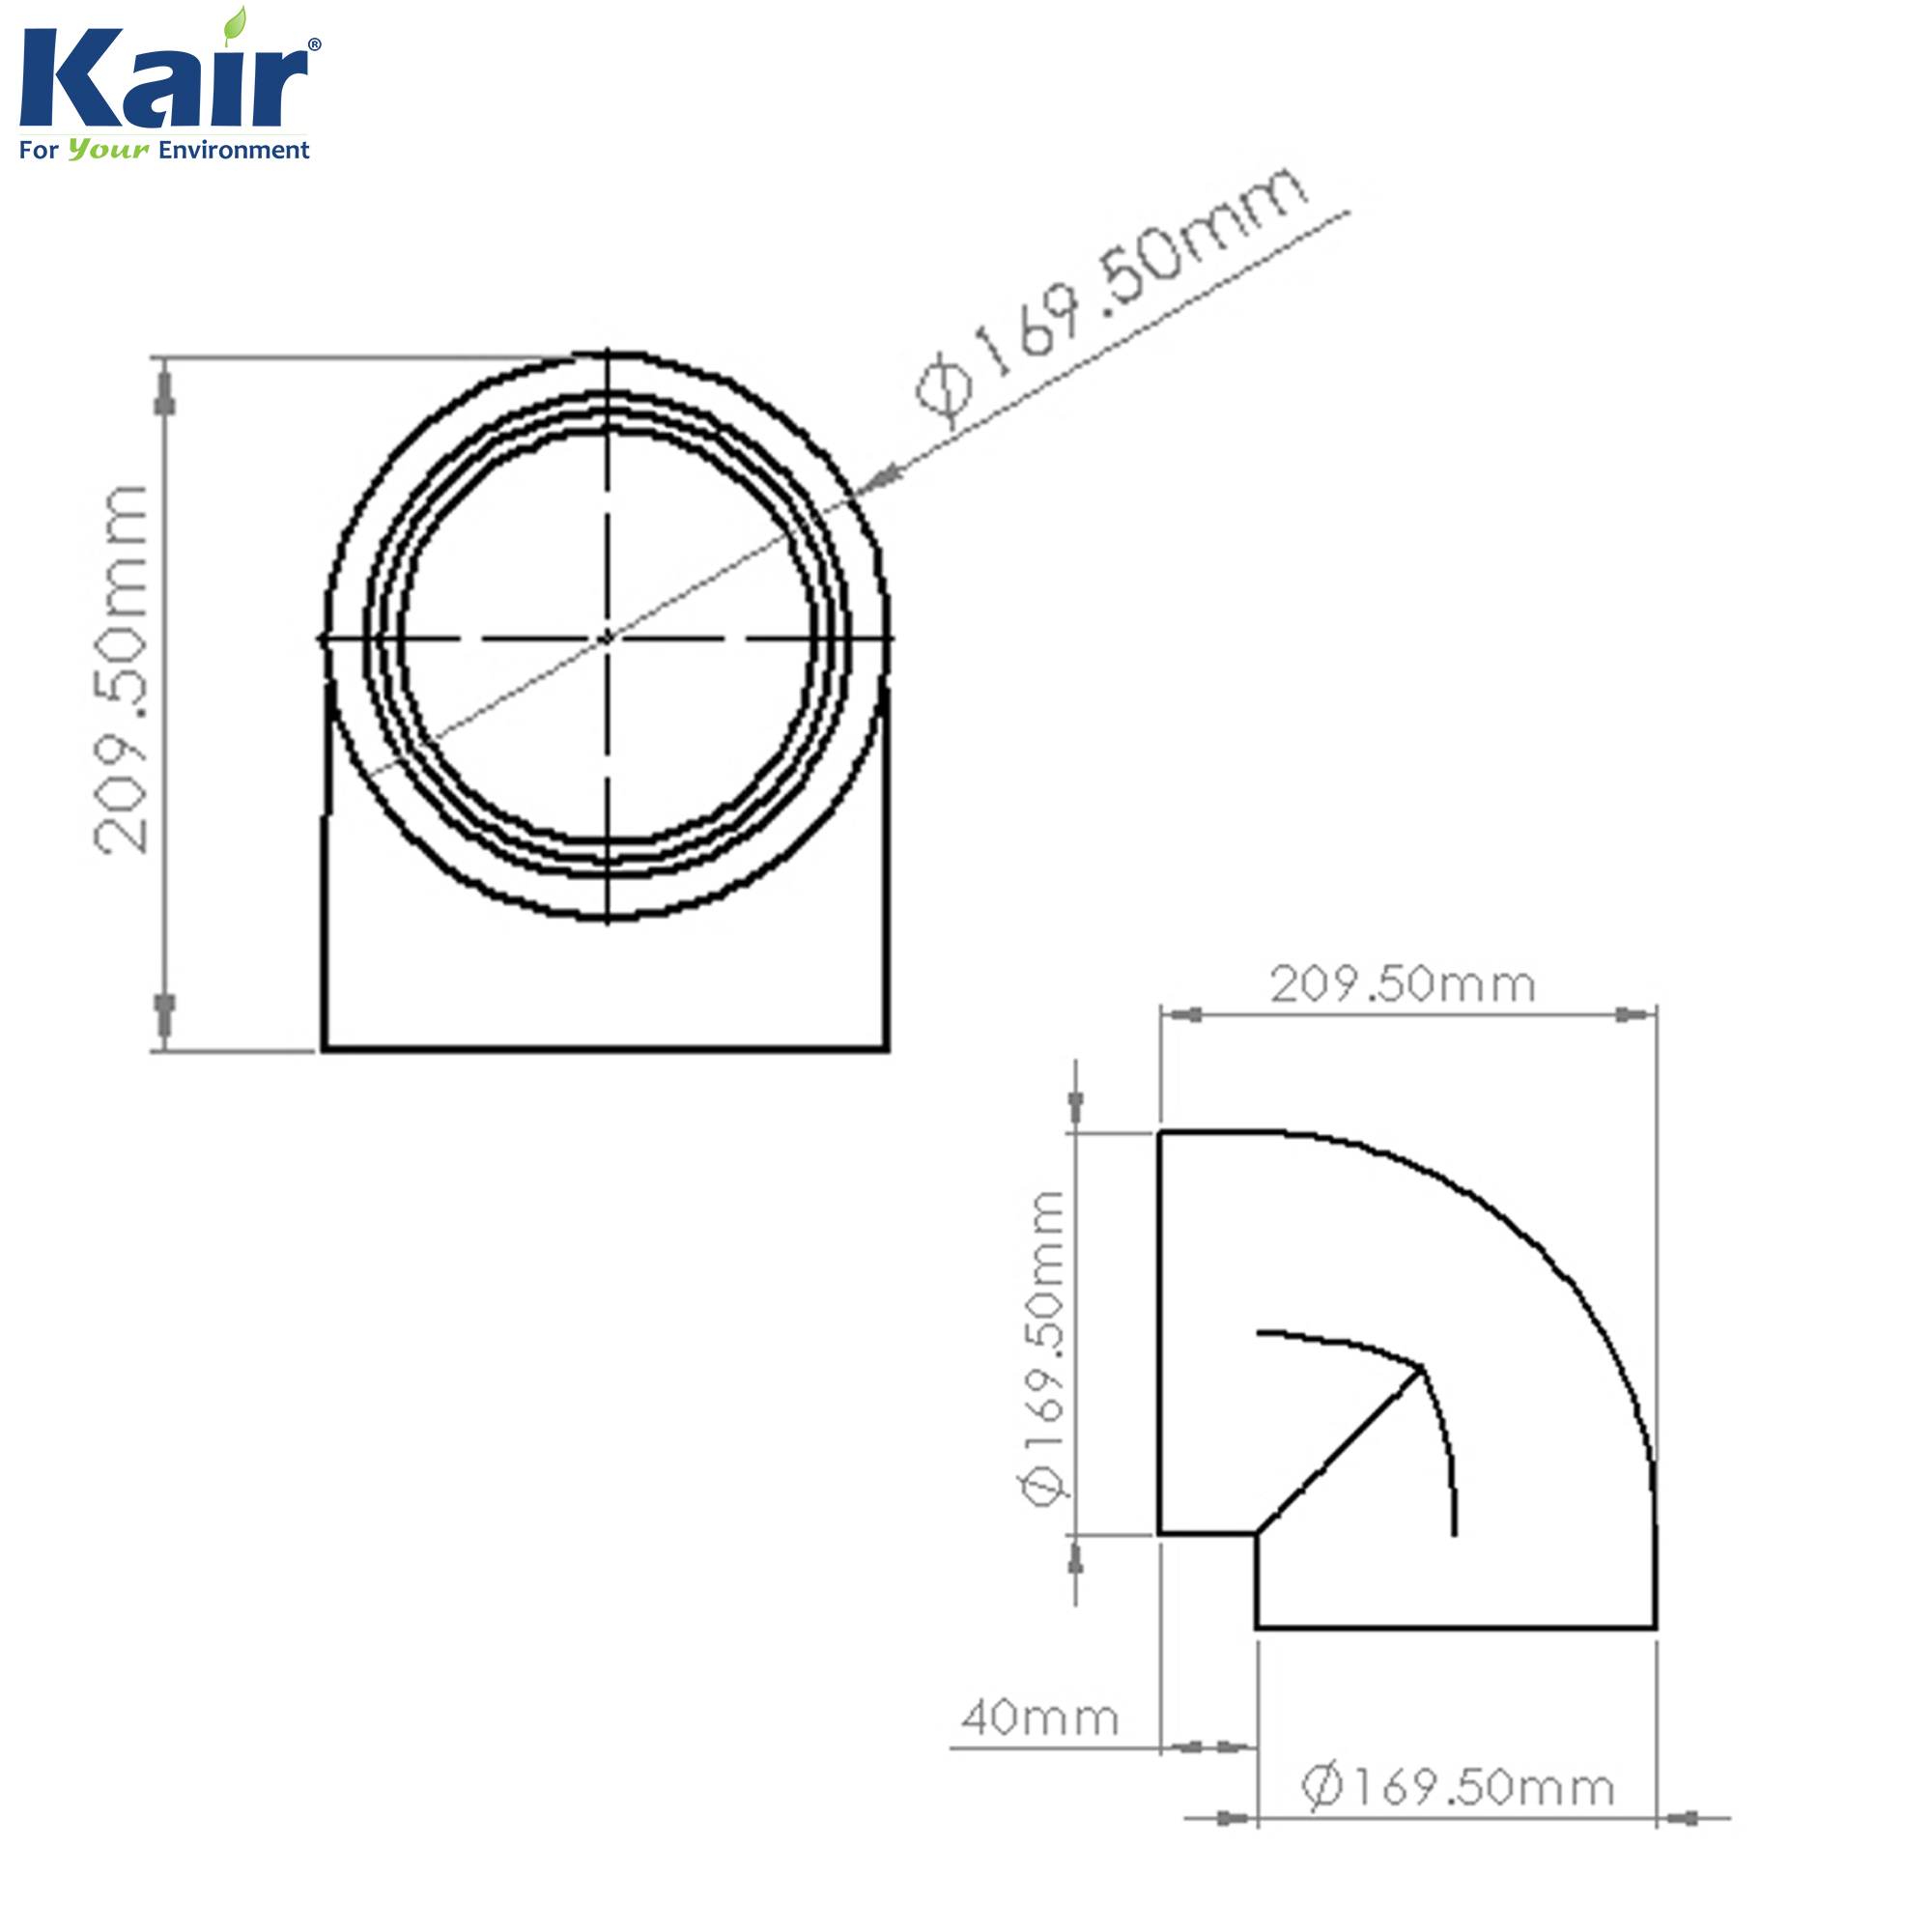 Kair Self-Seal Thermal Ducting - 125mm - 90 Degree Bends - Box of 6